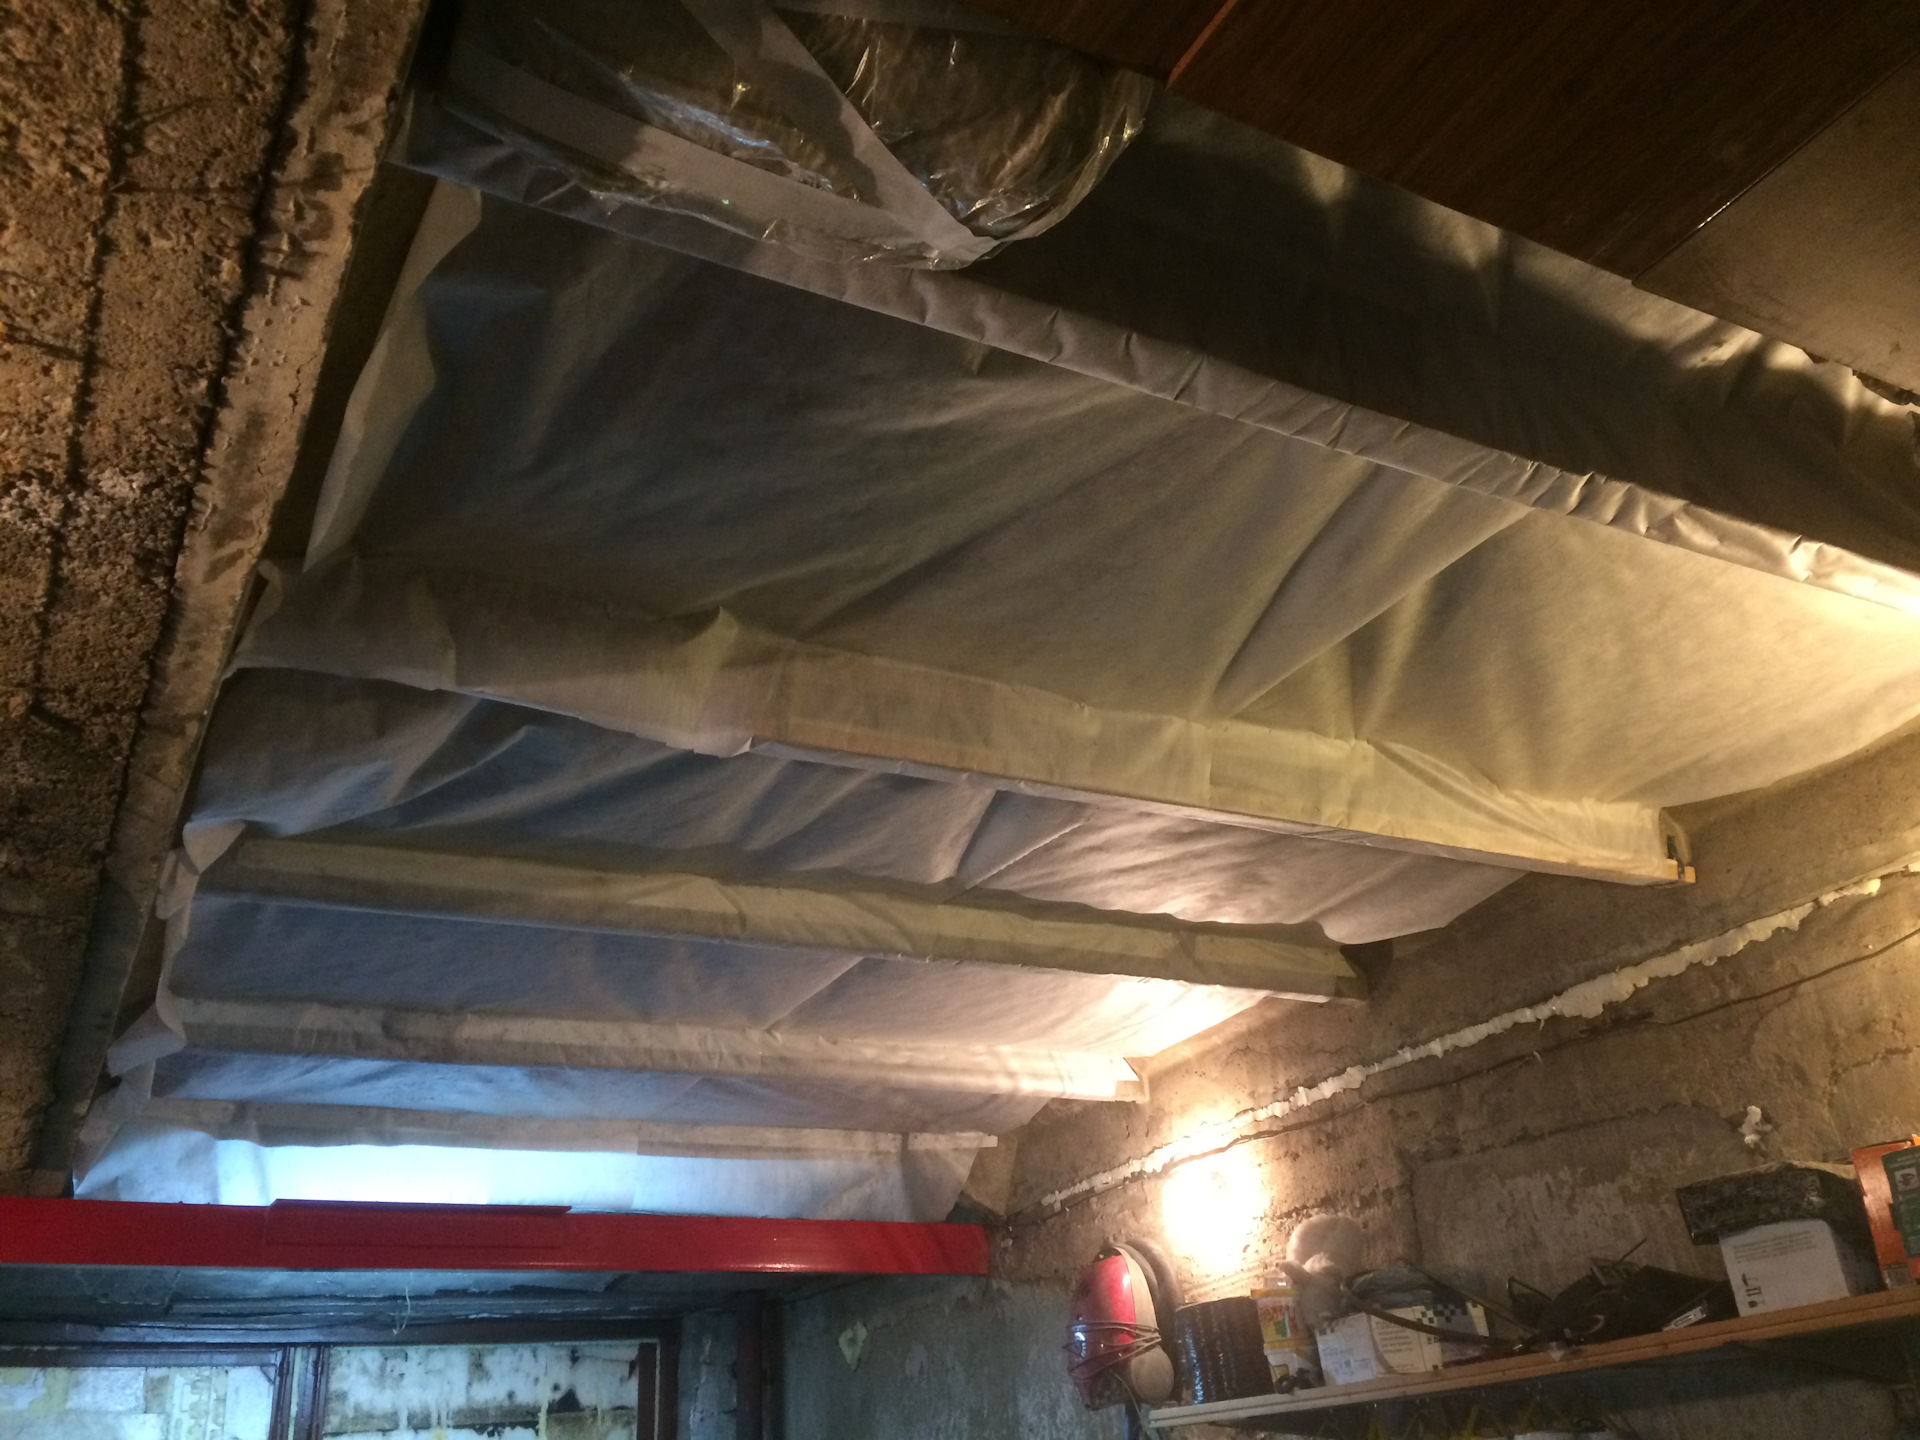 Обтянуть потолок в гараже полиэтиленом